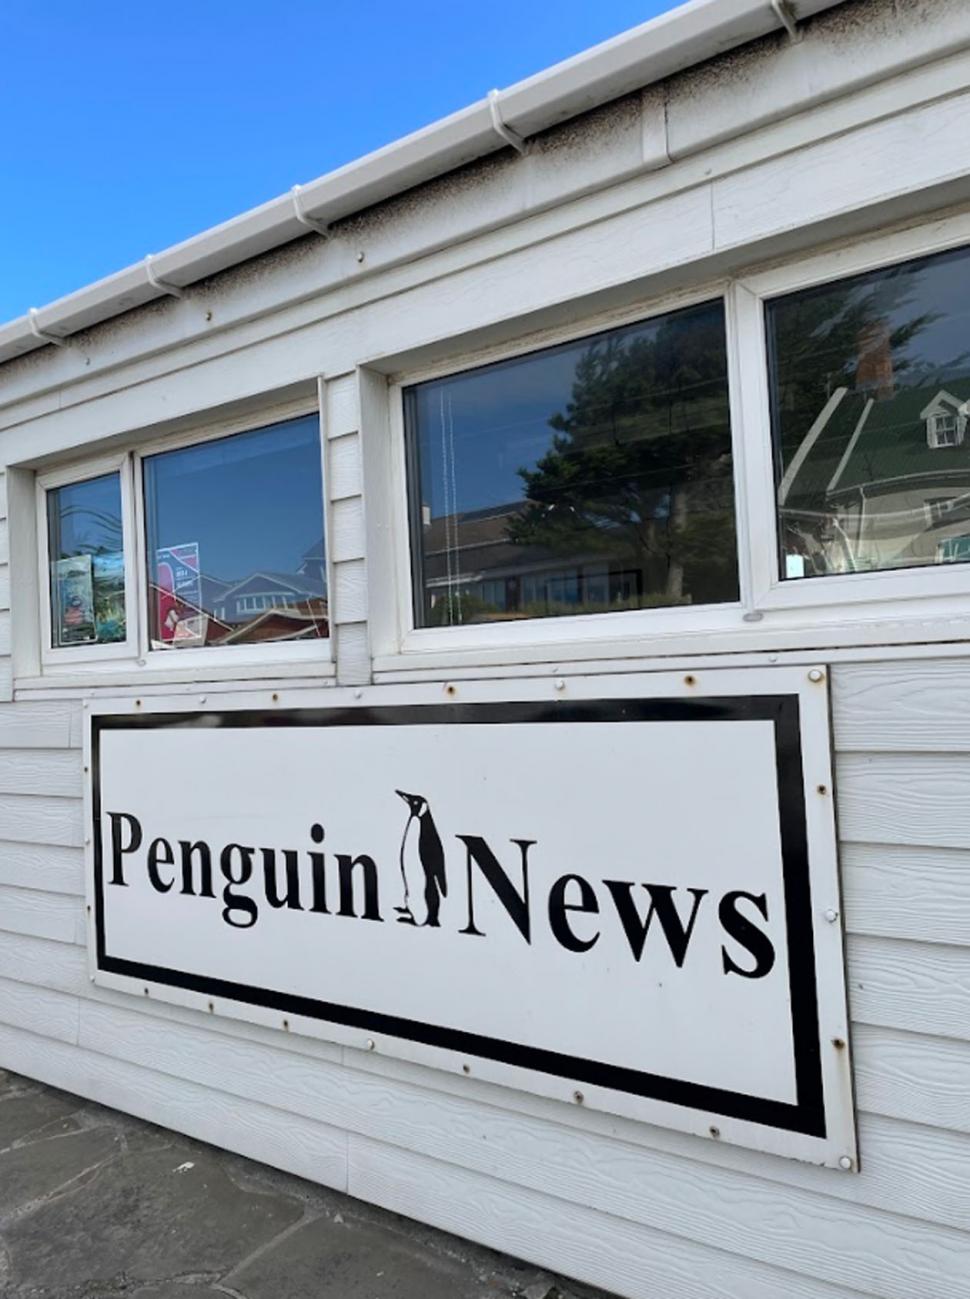 LA GACETA en Malvinas: cada viernes, un “pingüino” cuenta noticias y descarta versiones en las Islas